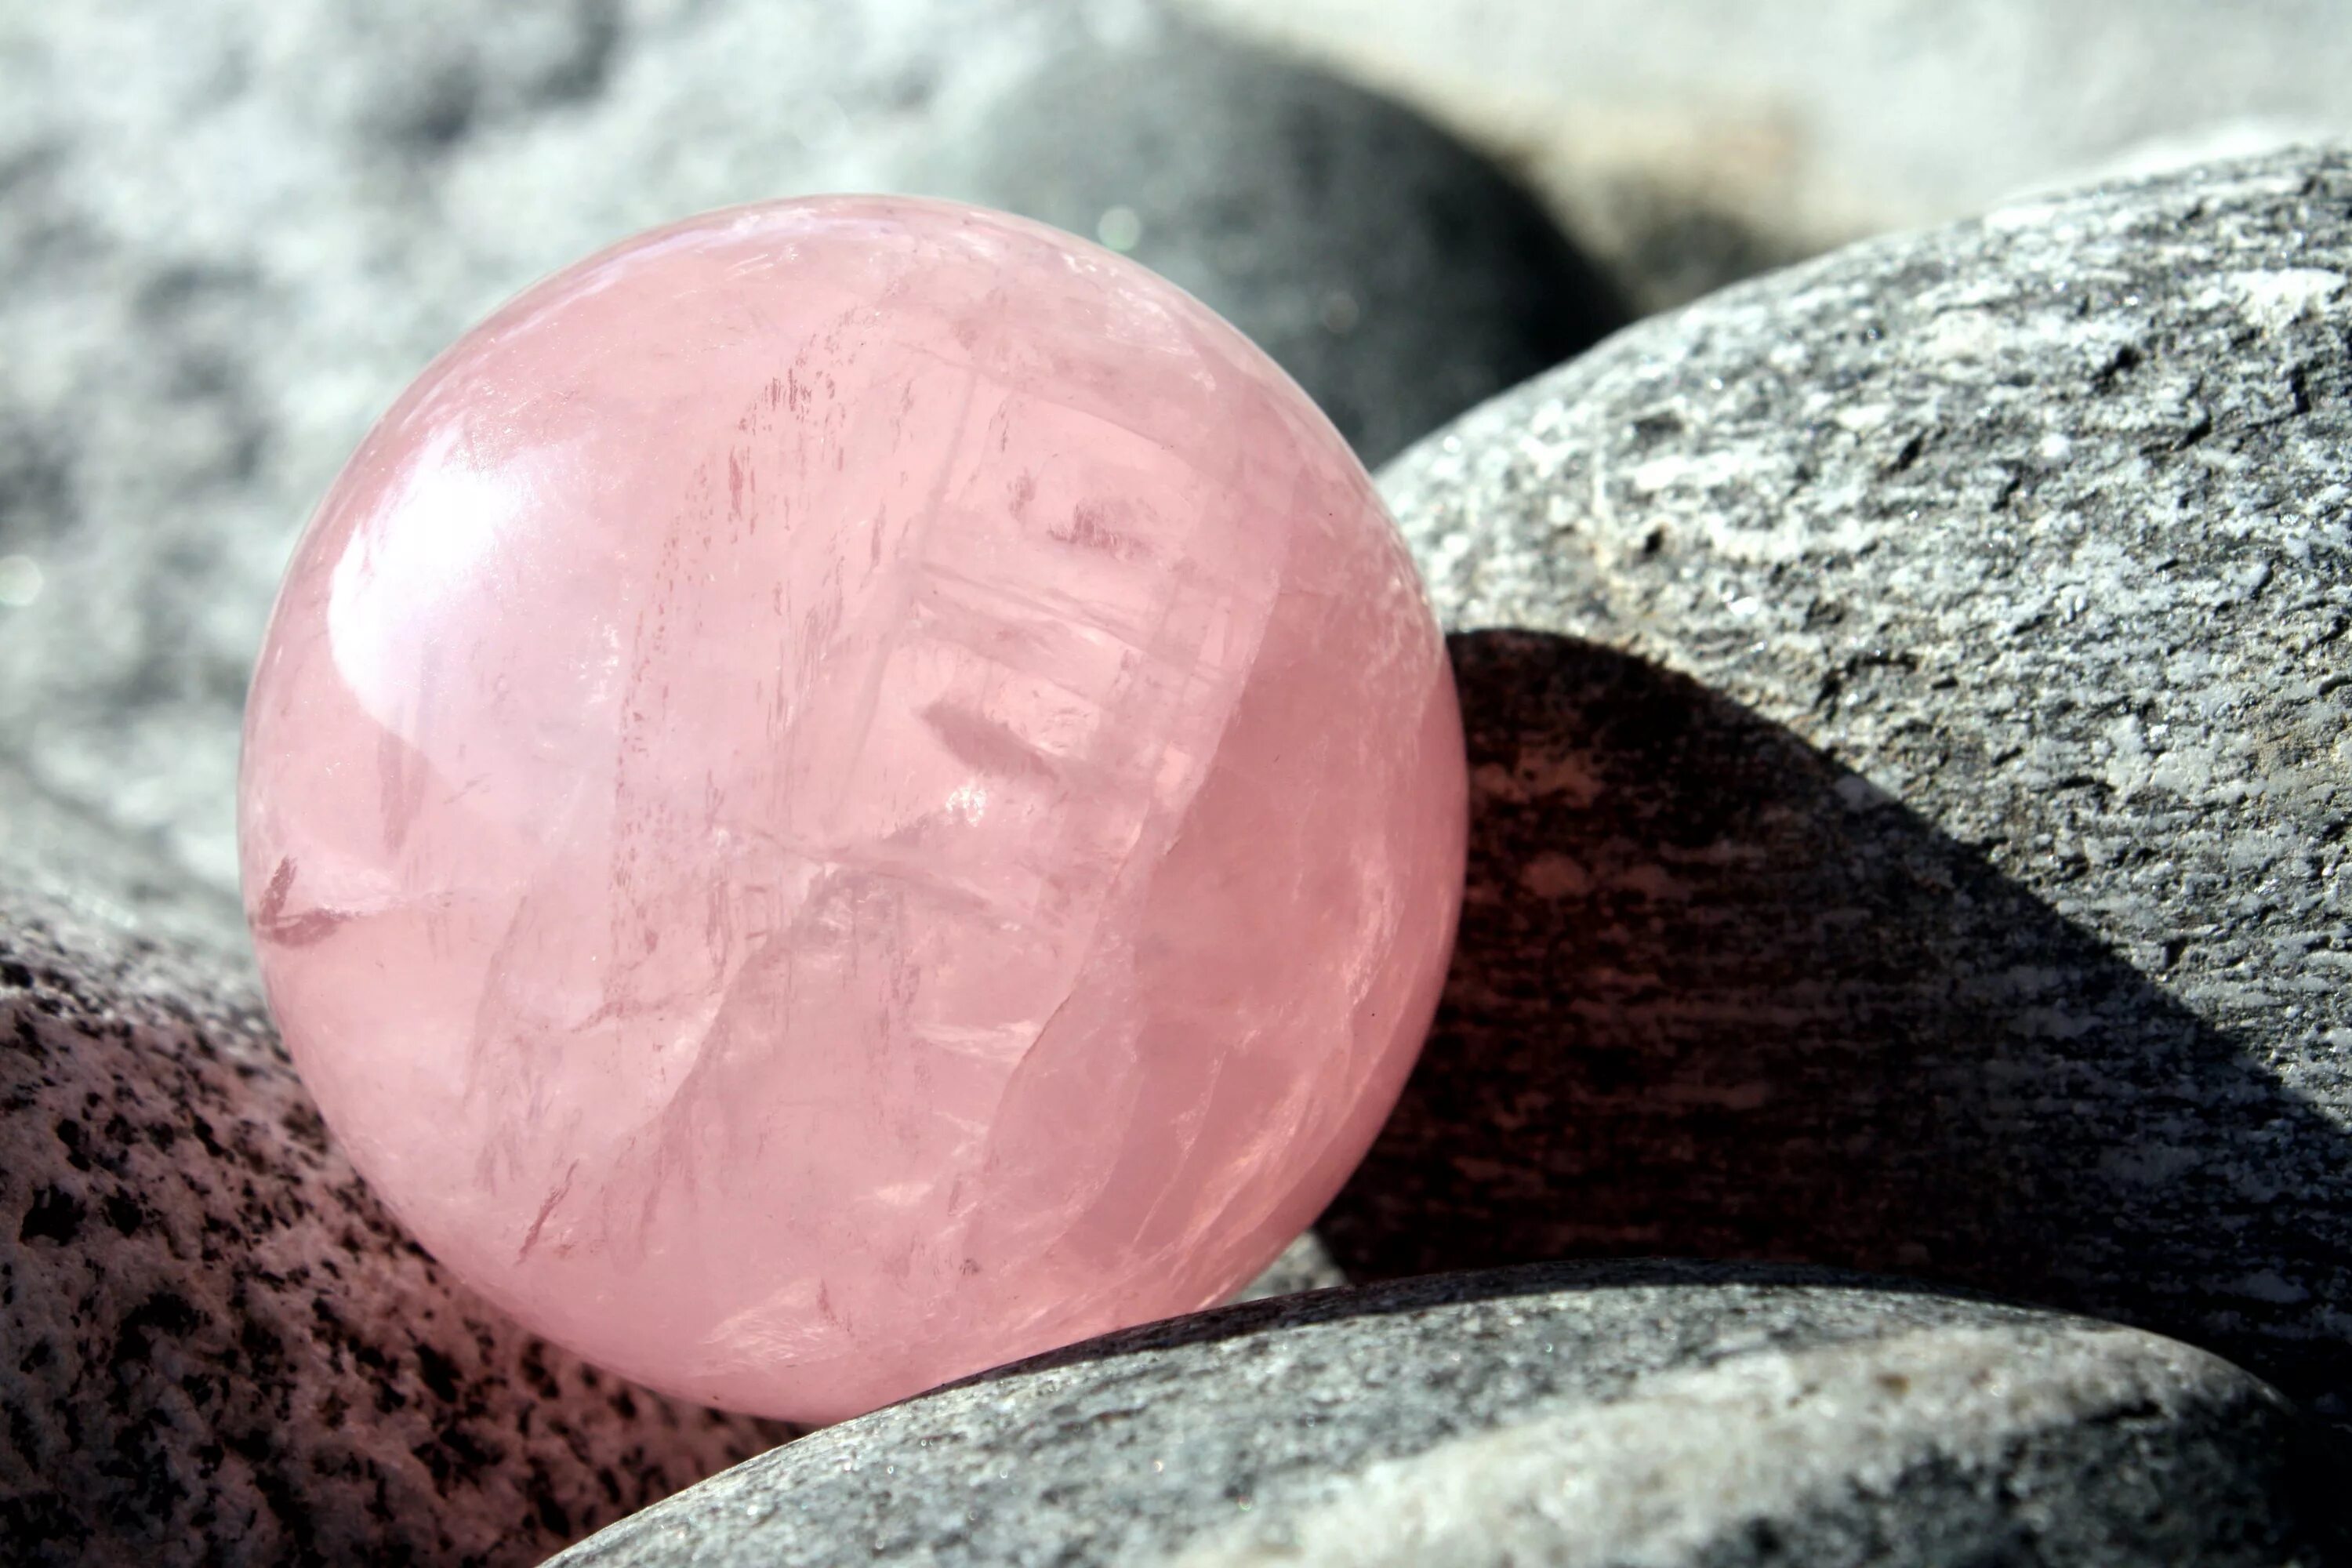 Pink stones. САМОЦВЕТ Rose Quartz - Роуз кварц. Quarzo Rosa камень. Полудрагоценные камни розовый кварц. Кварц поделочный камень.